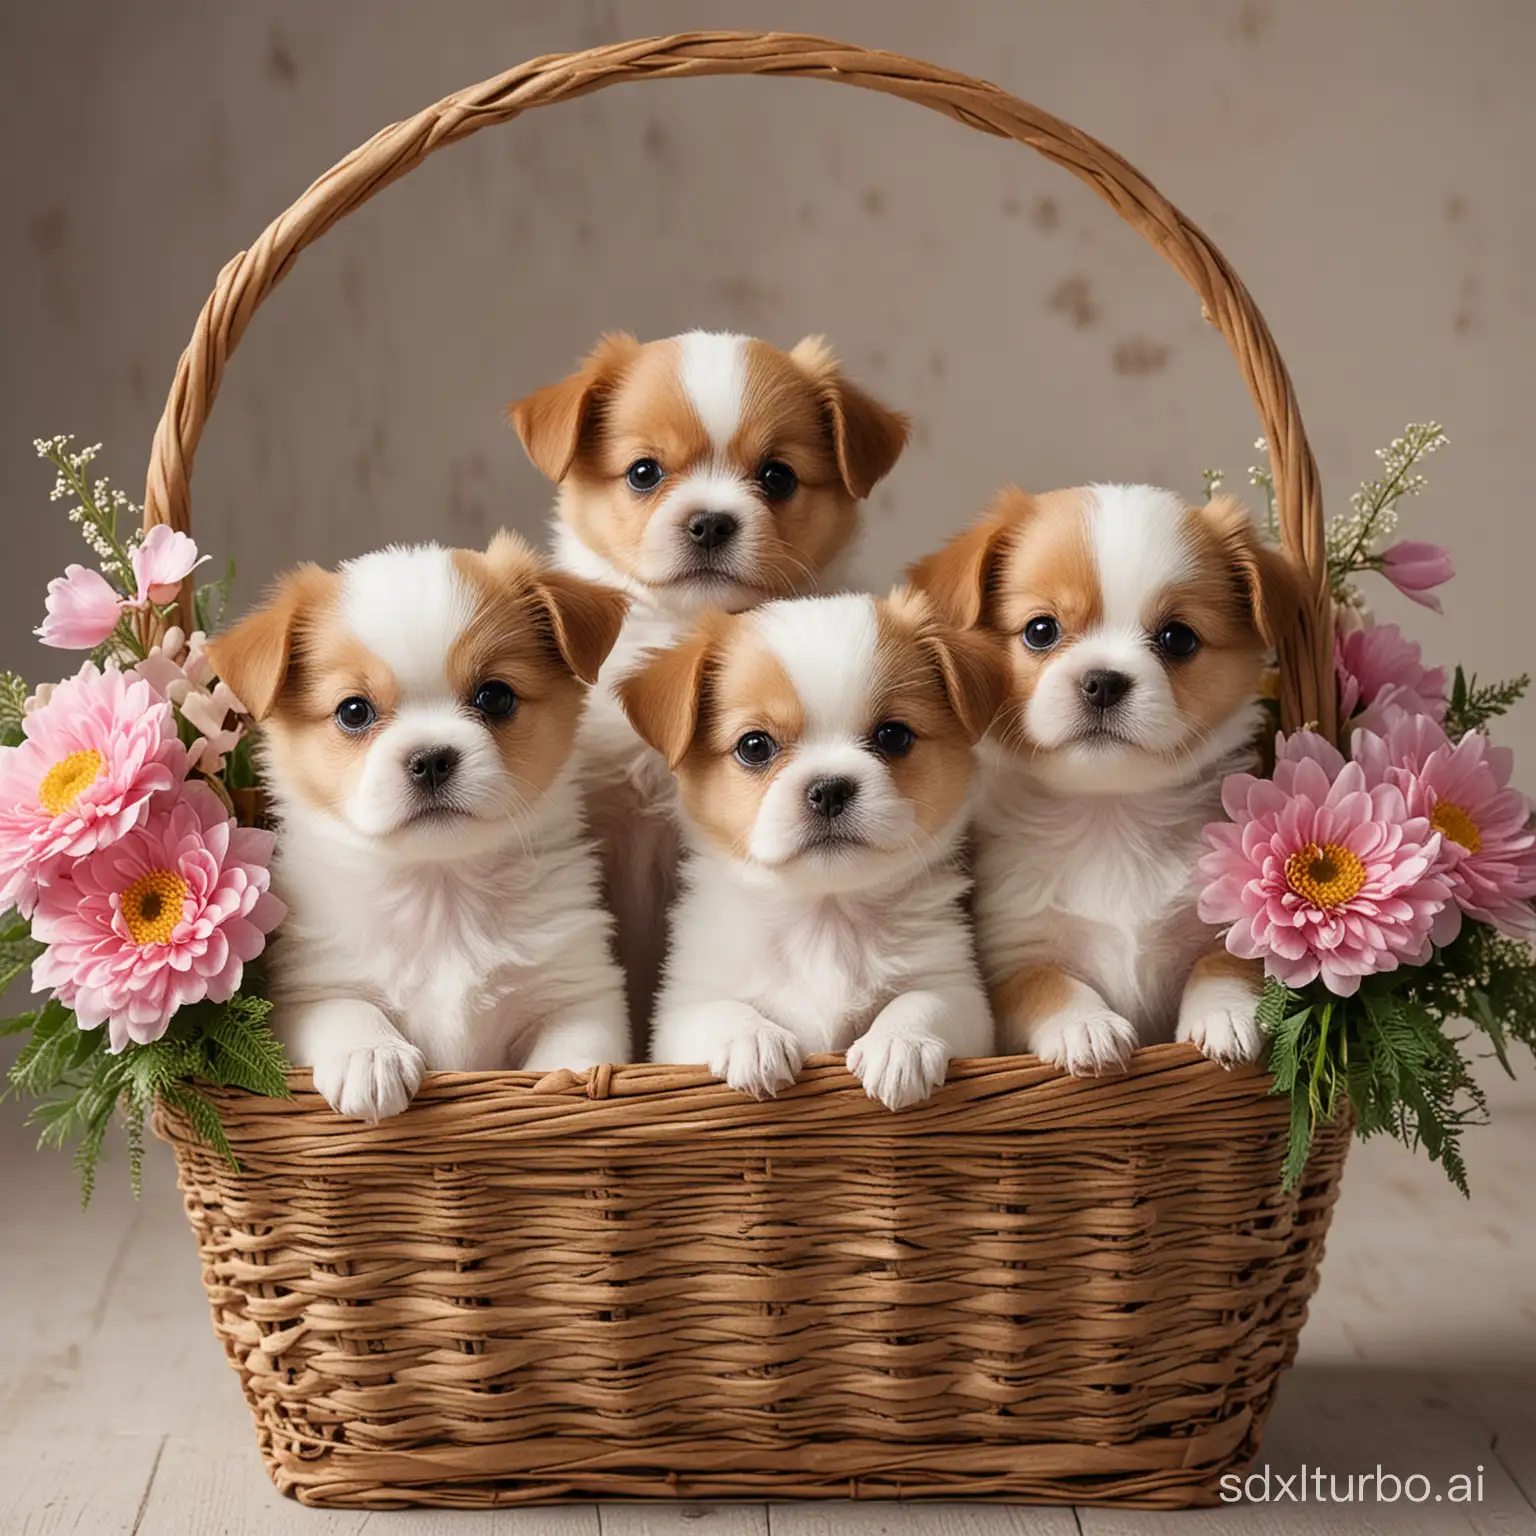 Three cute little dogs in a flower basket